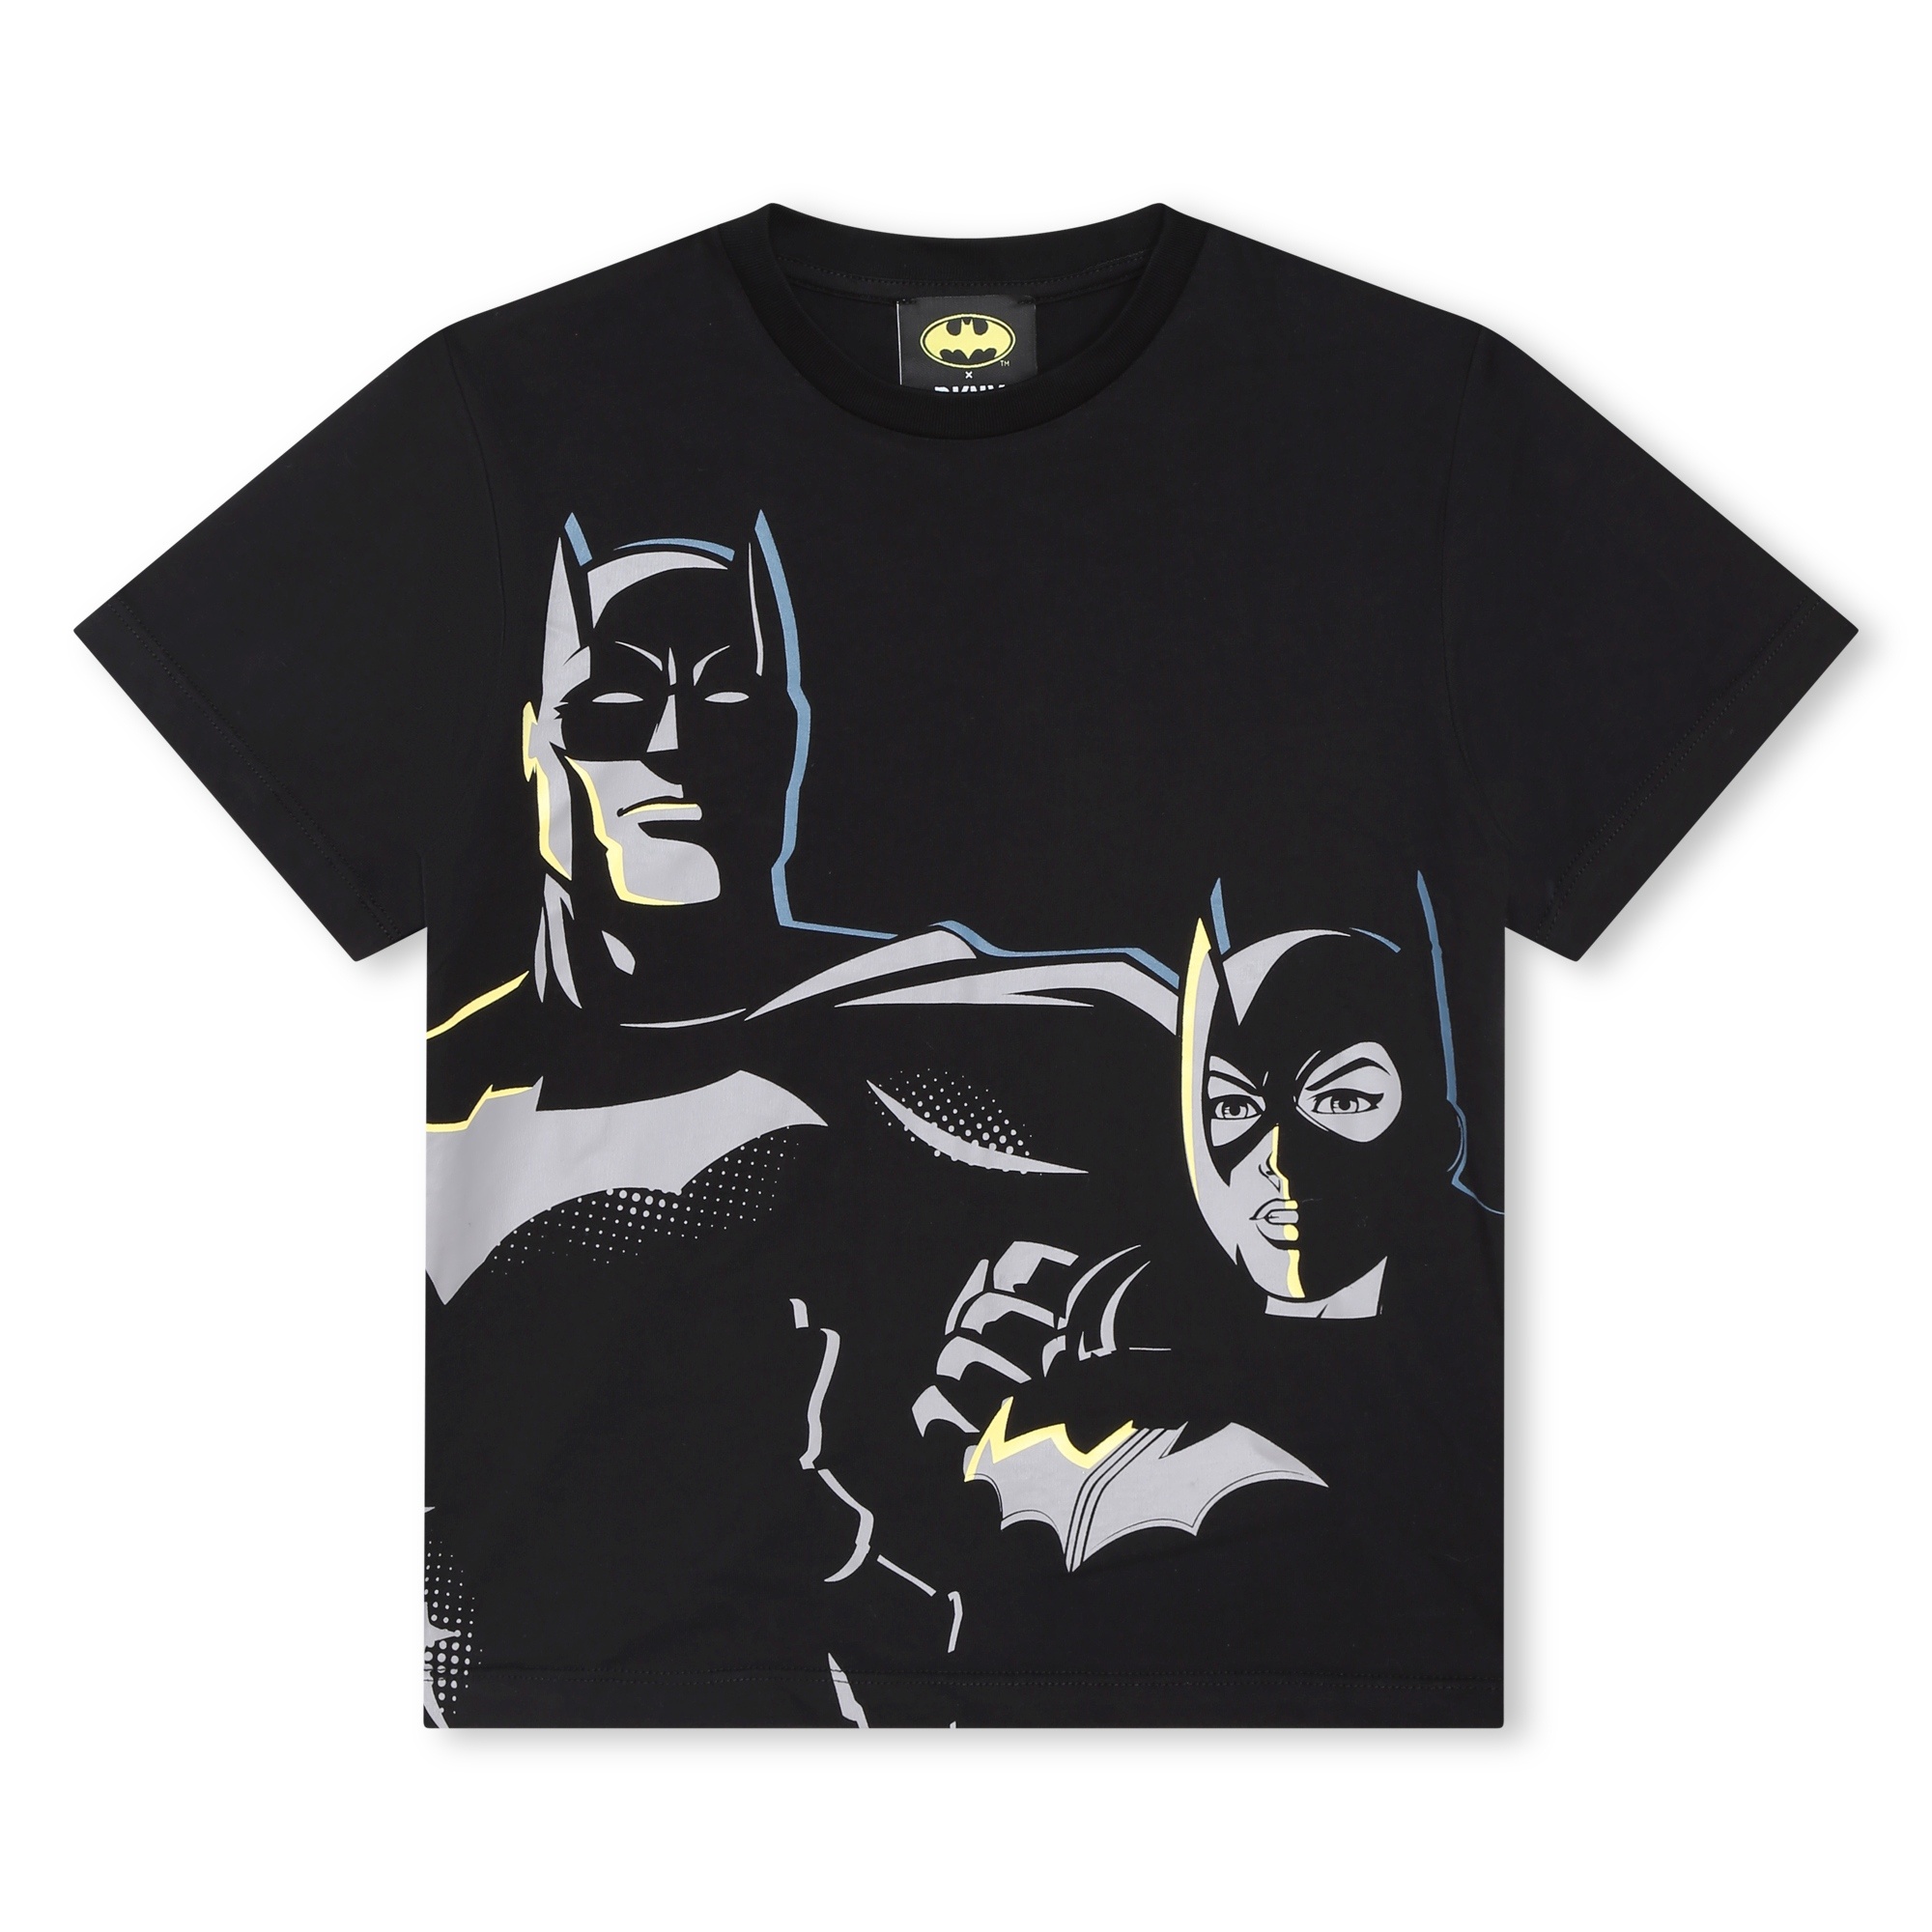 Stylisches DKNY Kids T-Shirt Batgirl Coolkids-Store Batman - unisex 